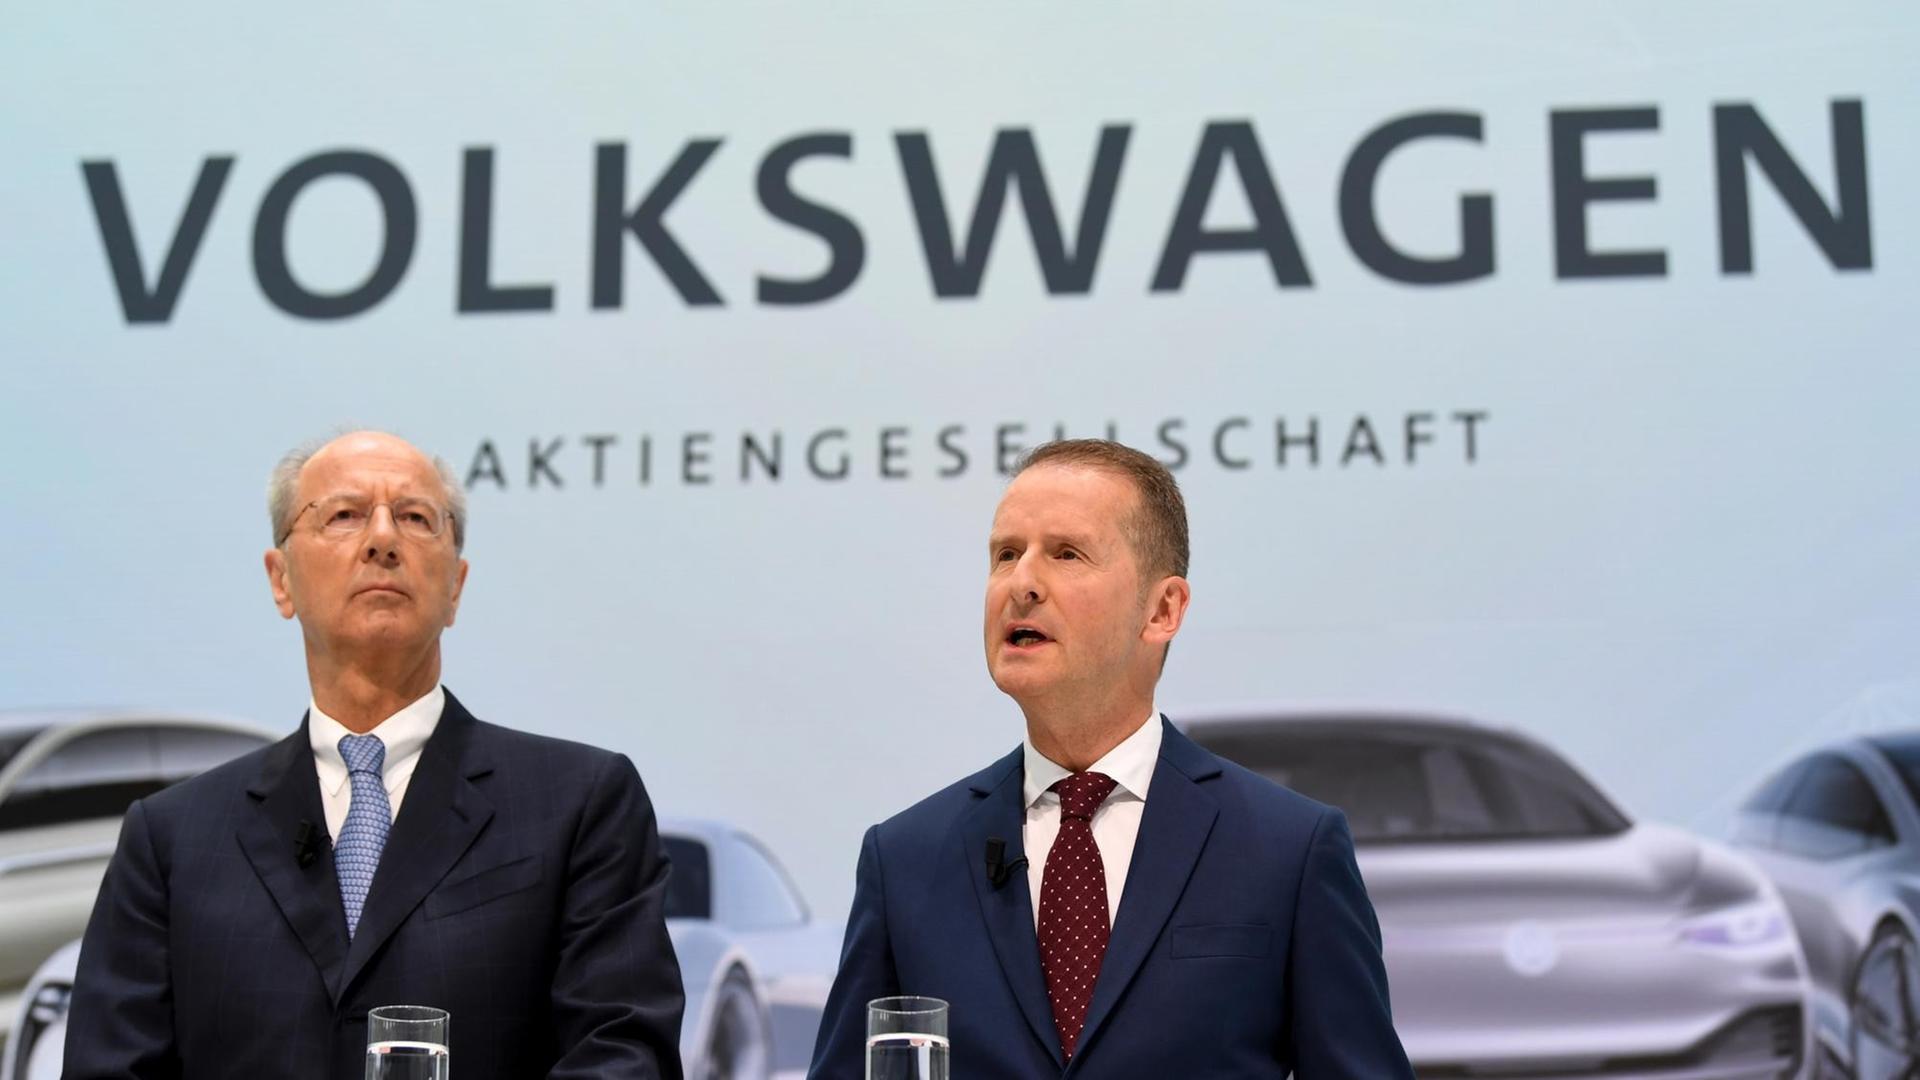 Herbert Diess (r), Vorstandsvorsitzender der Volkswagen AG, und Hans Dieter Pötsch, Vorsitzender des Aufsichtsrats der Volkswagen AG im Jahr 2018